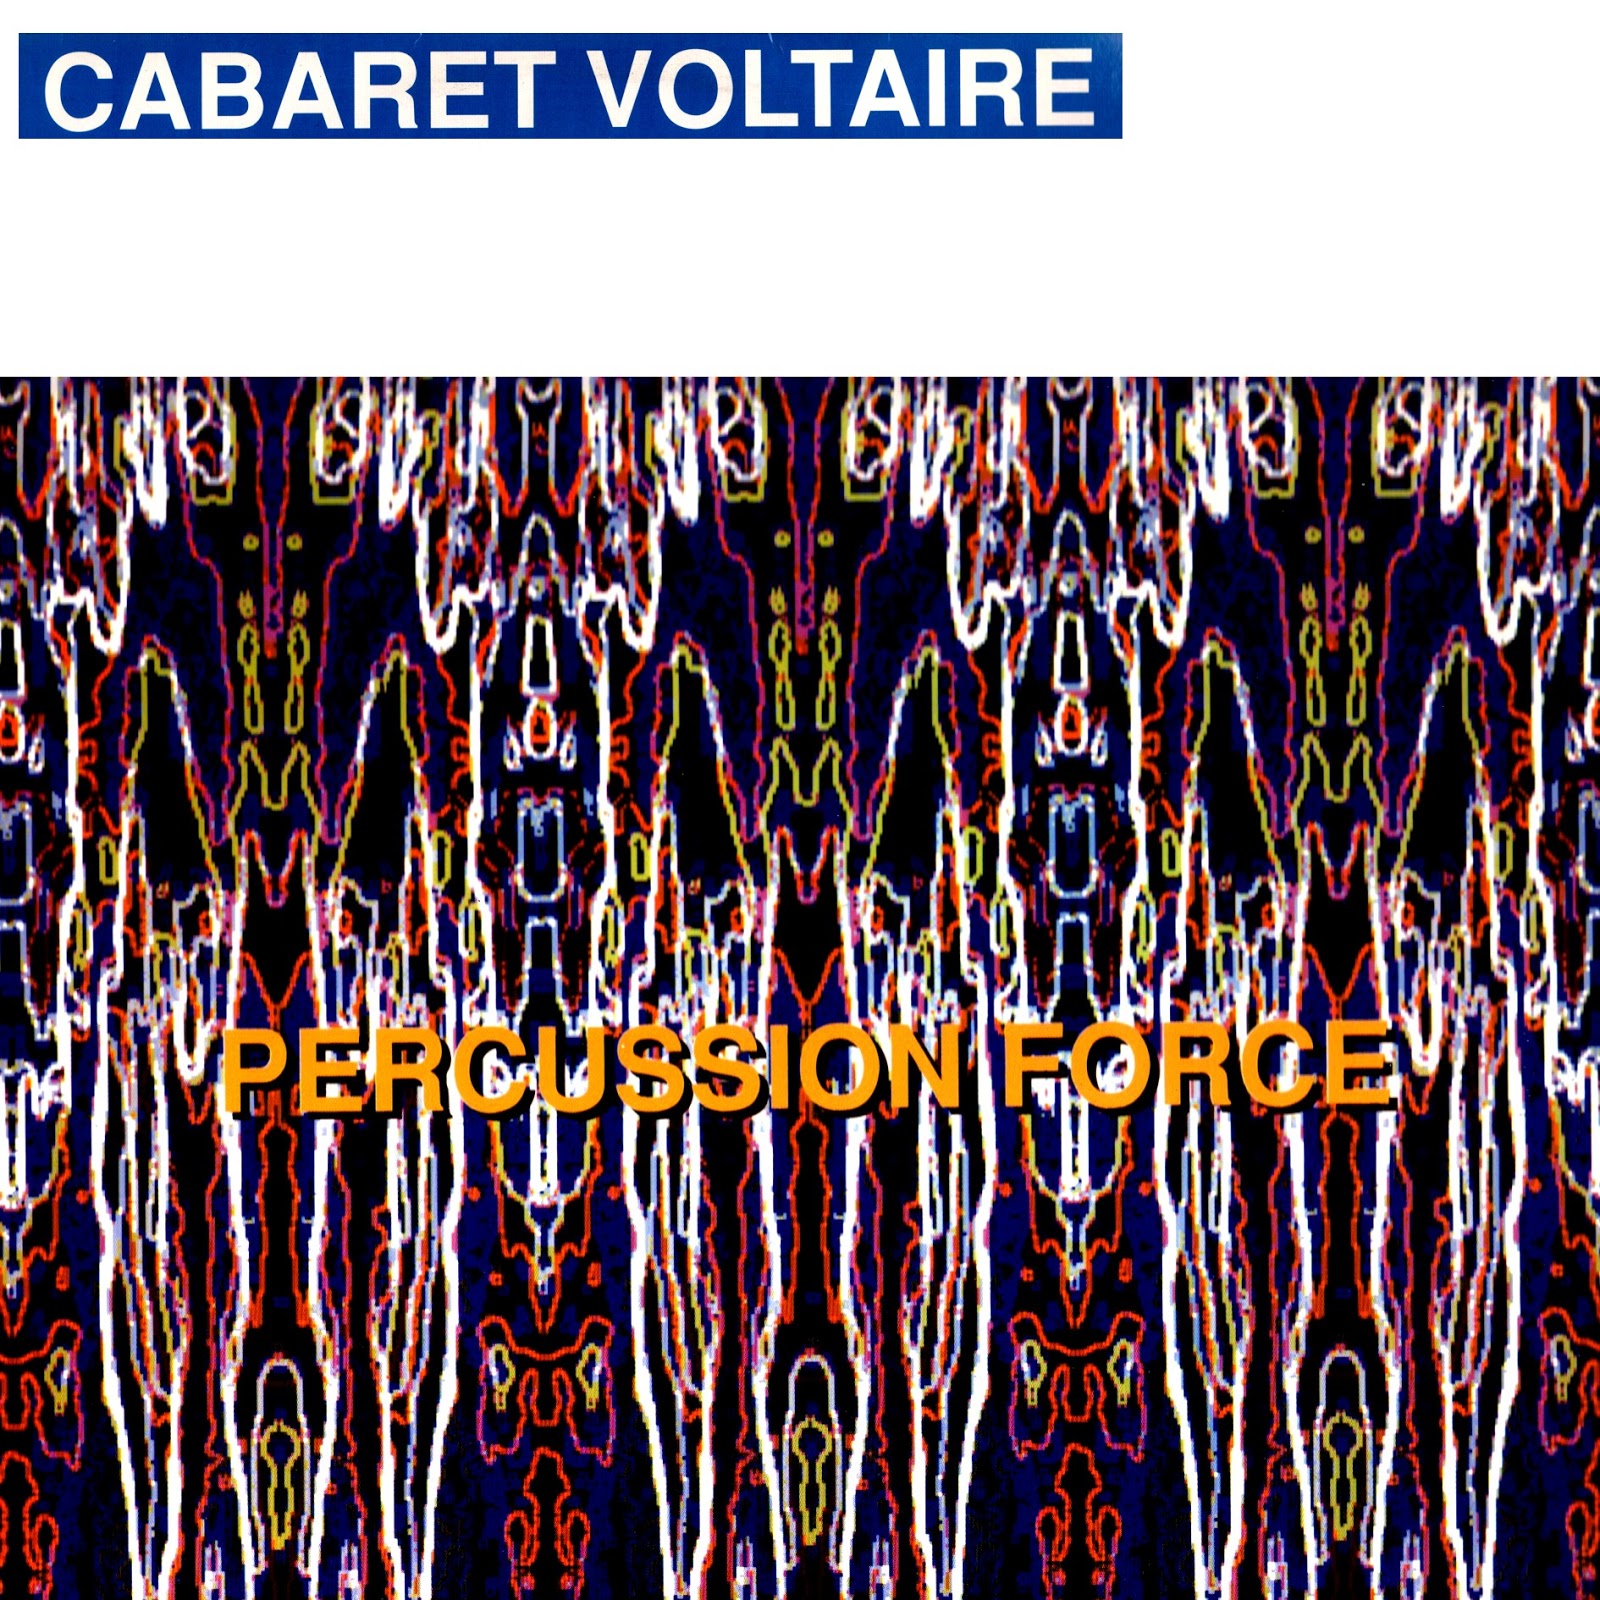 The Crackdown Cabaret Voltaire Blogspot